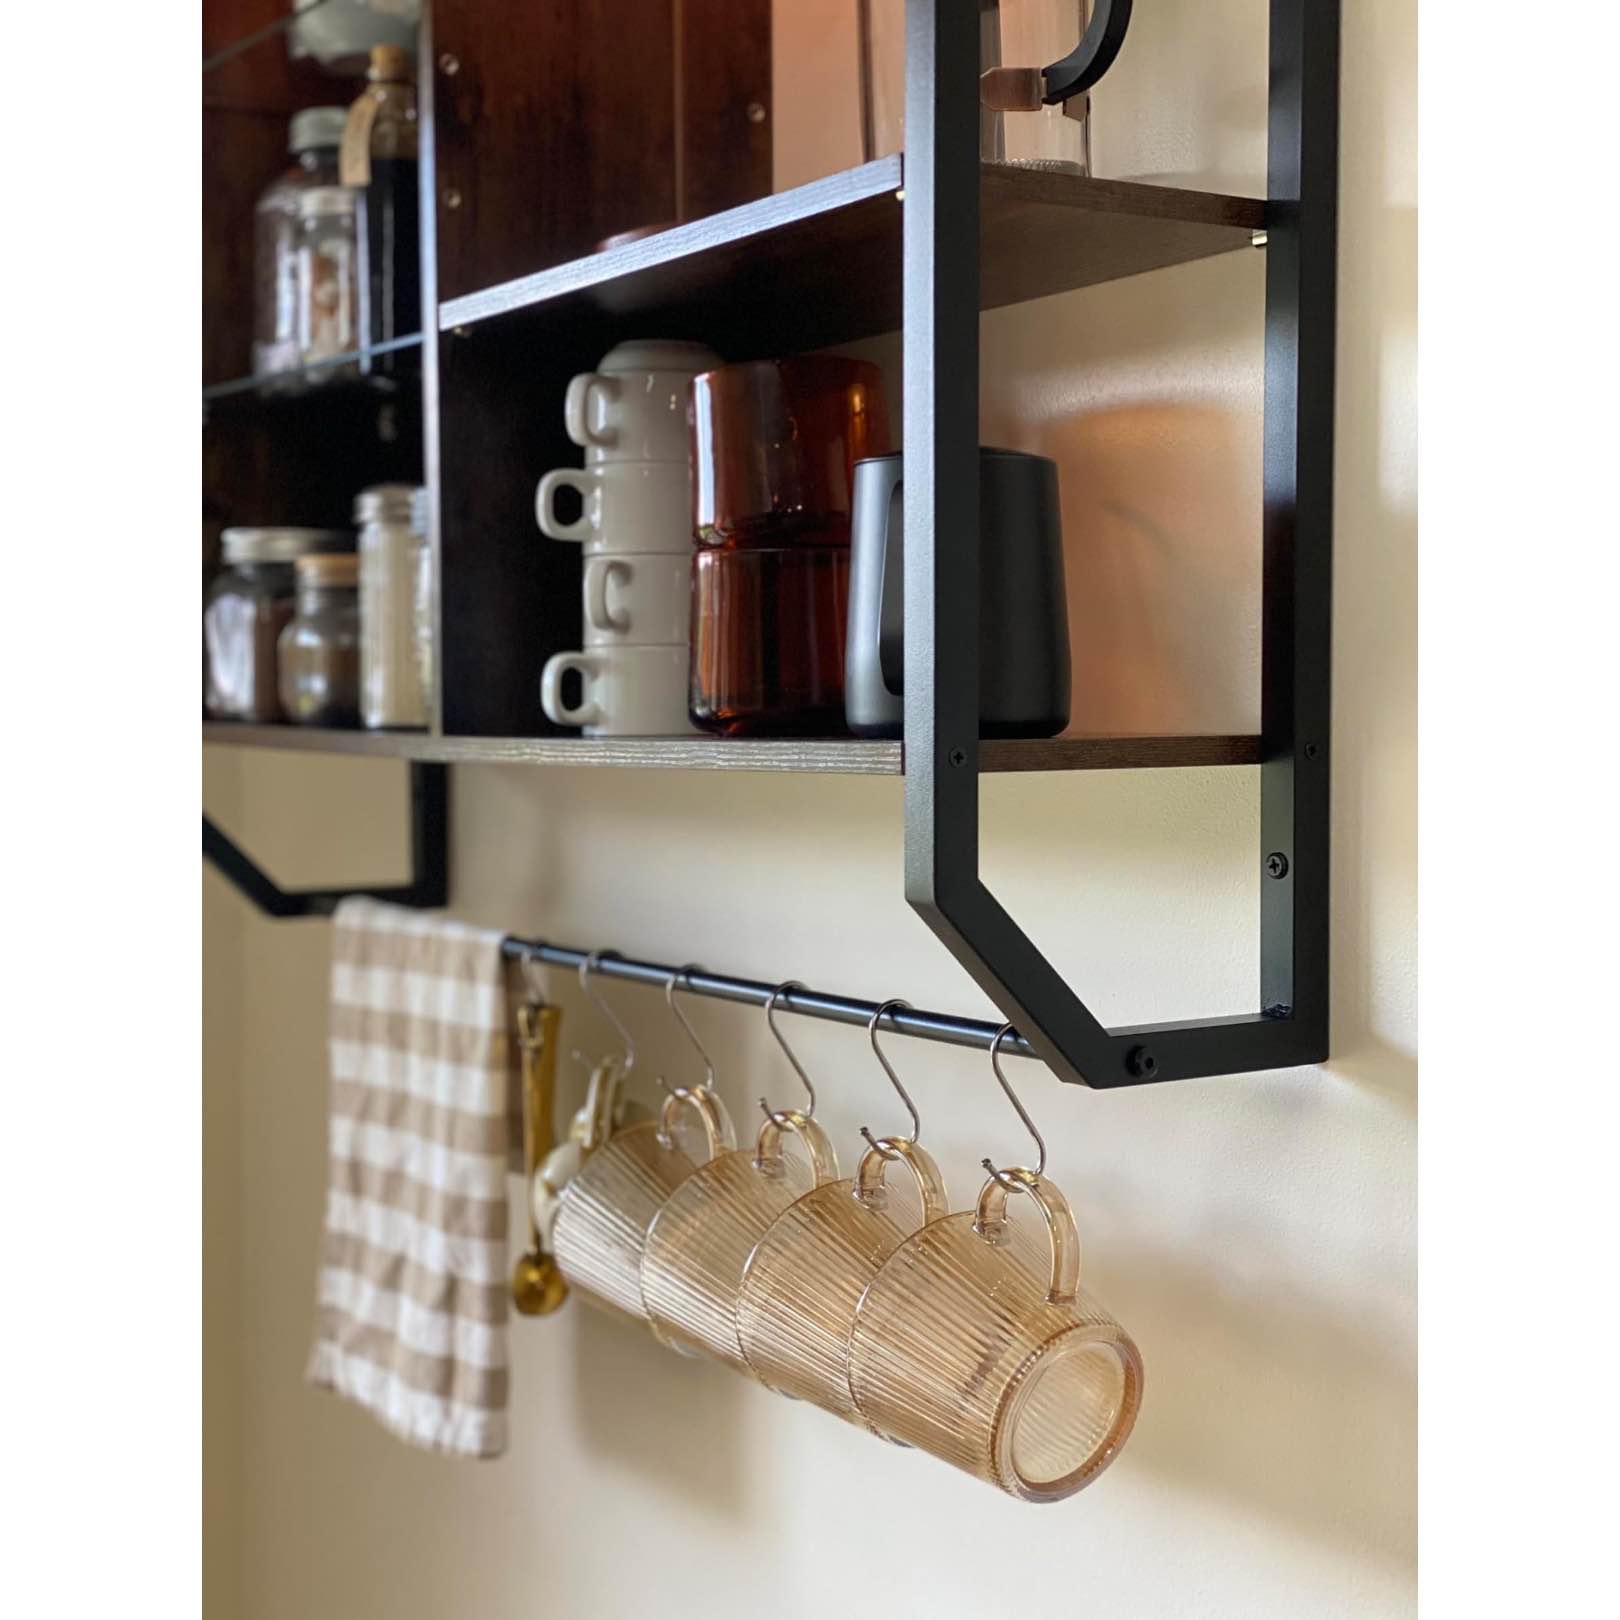 bestier-led-floating-display-shelves-towel-bar